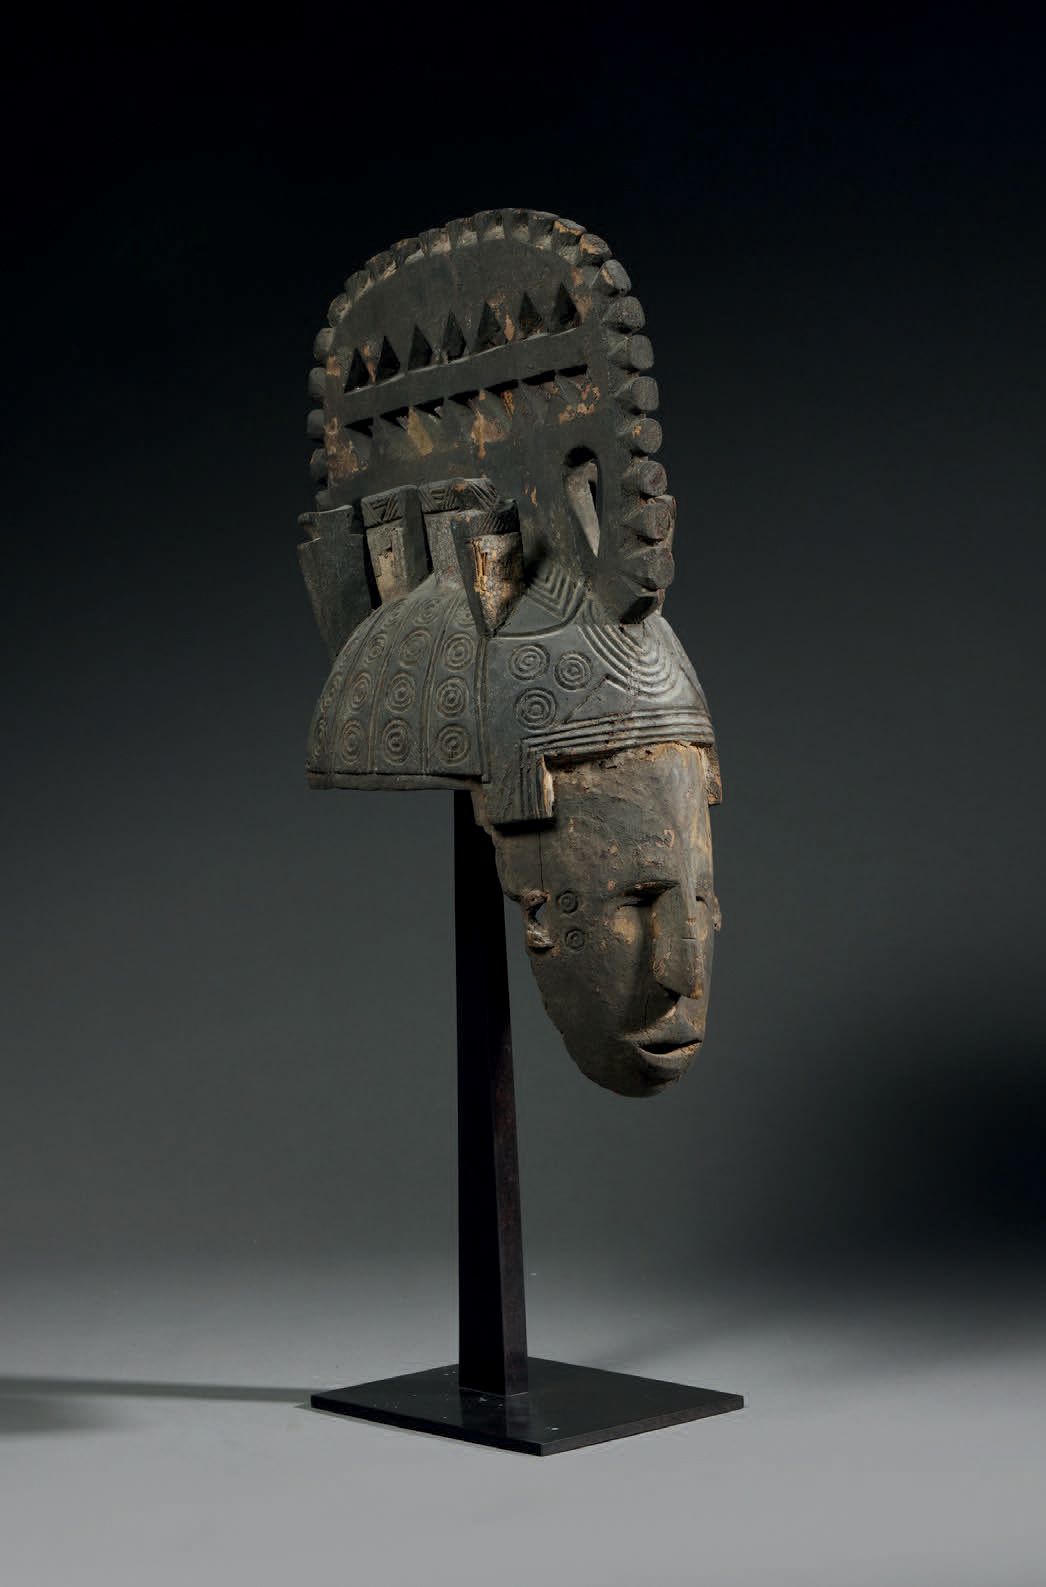 Null 伊格博Mmwo面具
尼日利亚
木头
高45厘米
面具-头盔描绘了一张人脸，上面有一个壮观的镂空冠状头饰，两侧有梳子。作为伊格博艺术的特征，这种类型的面&hellip;